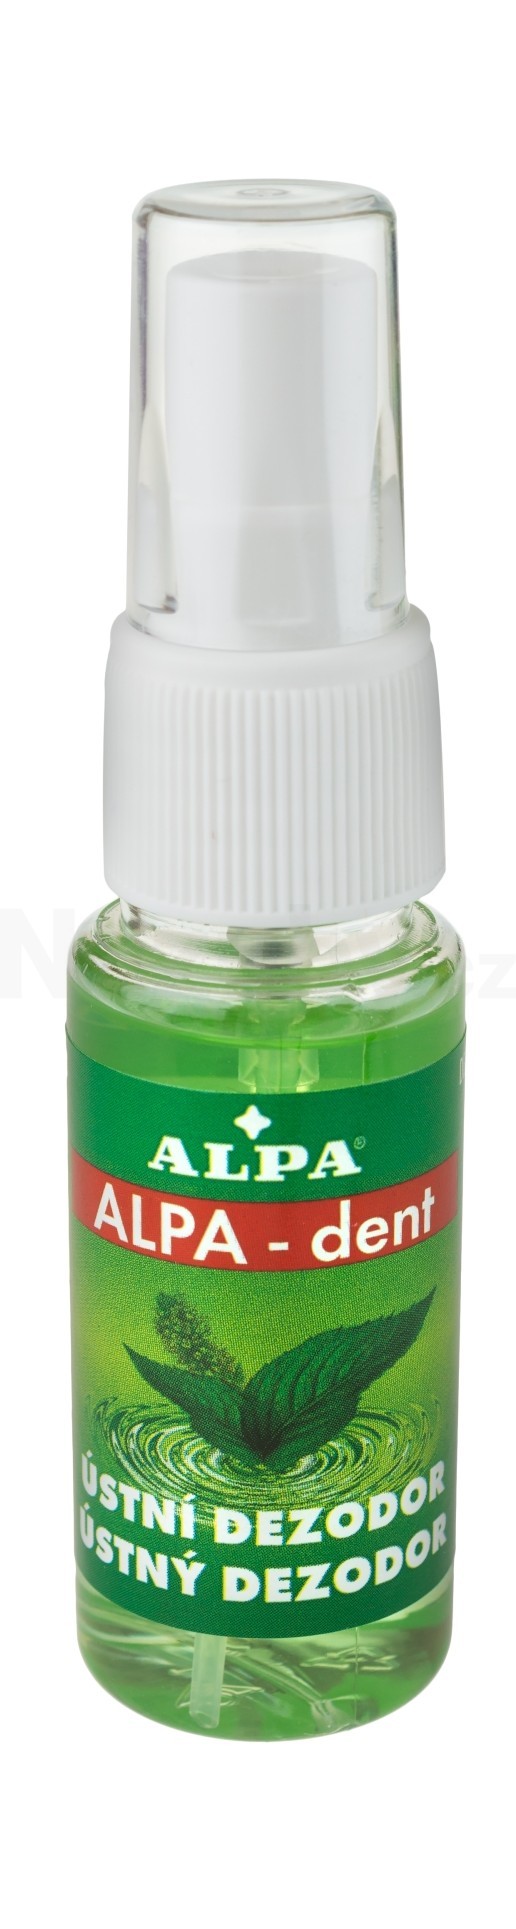 Alpa Dent ústní dezodor sprej 30 ml